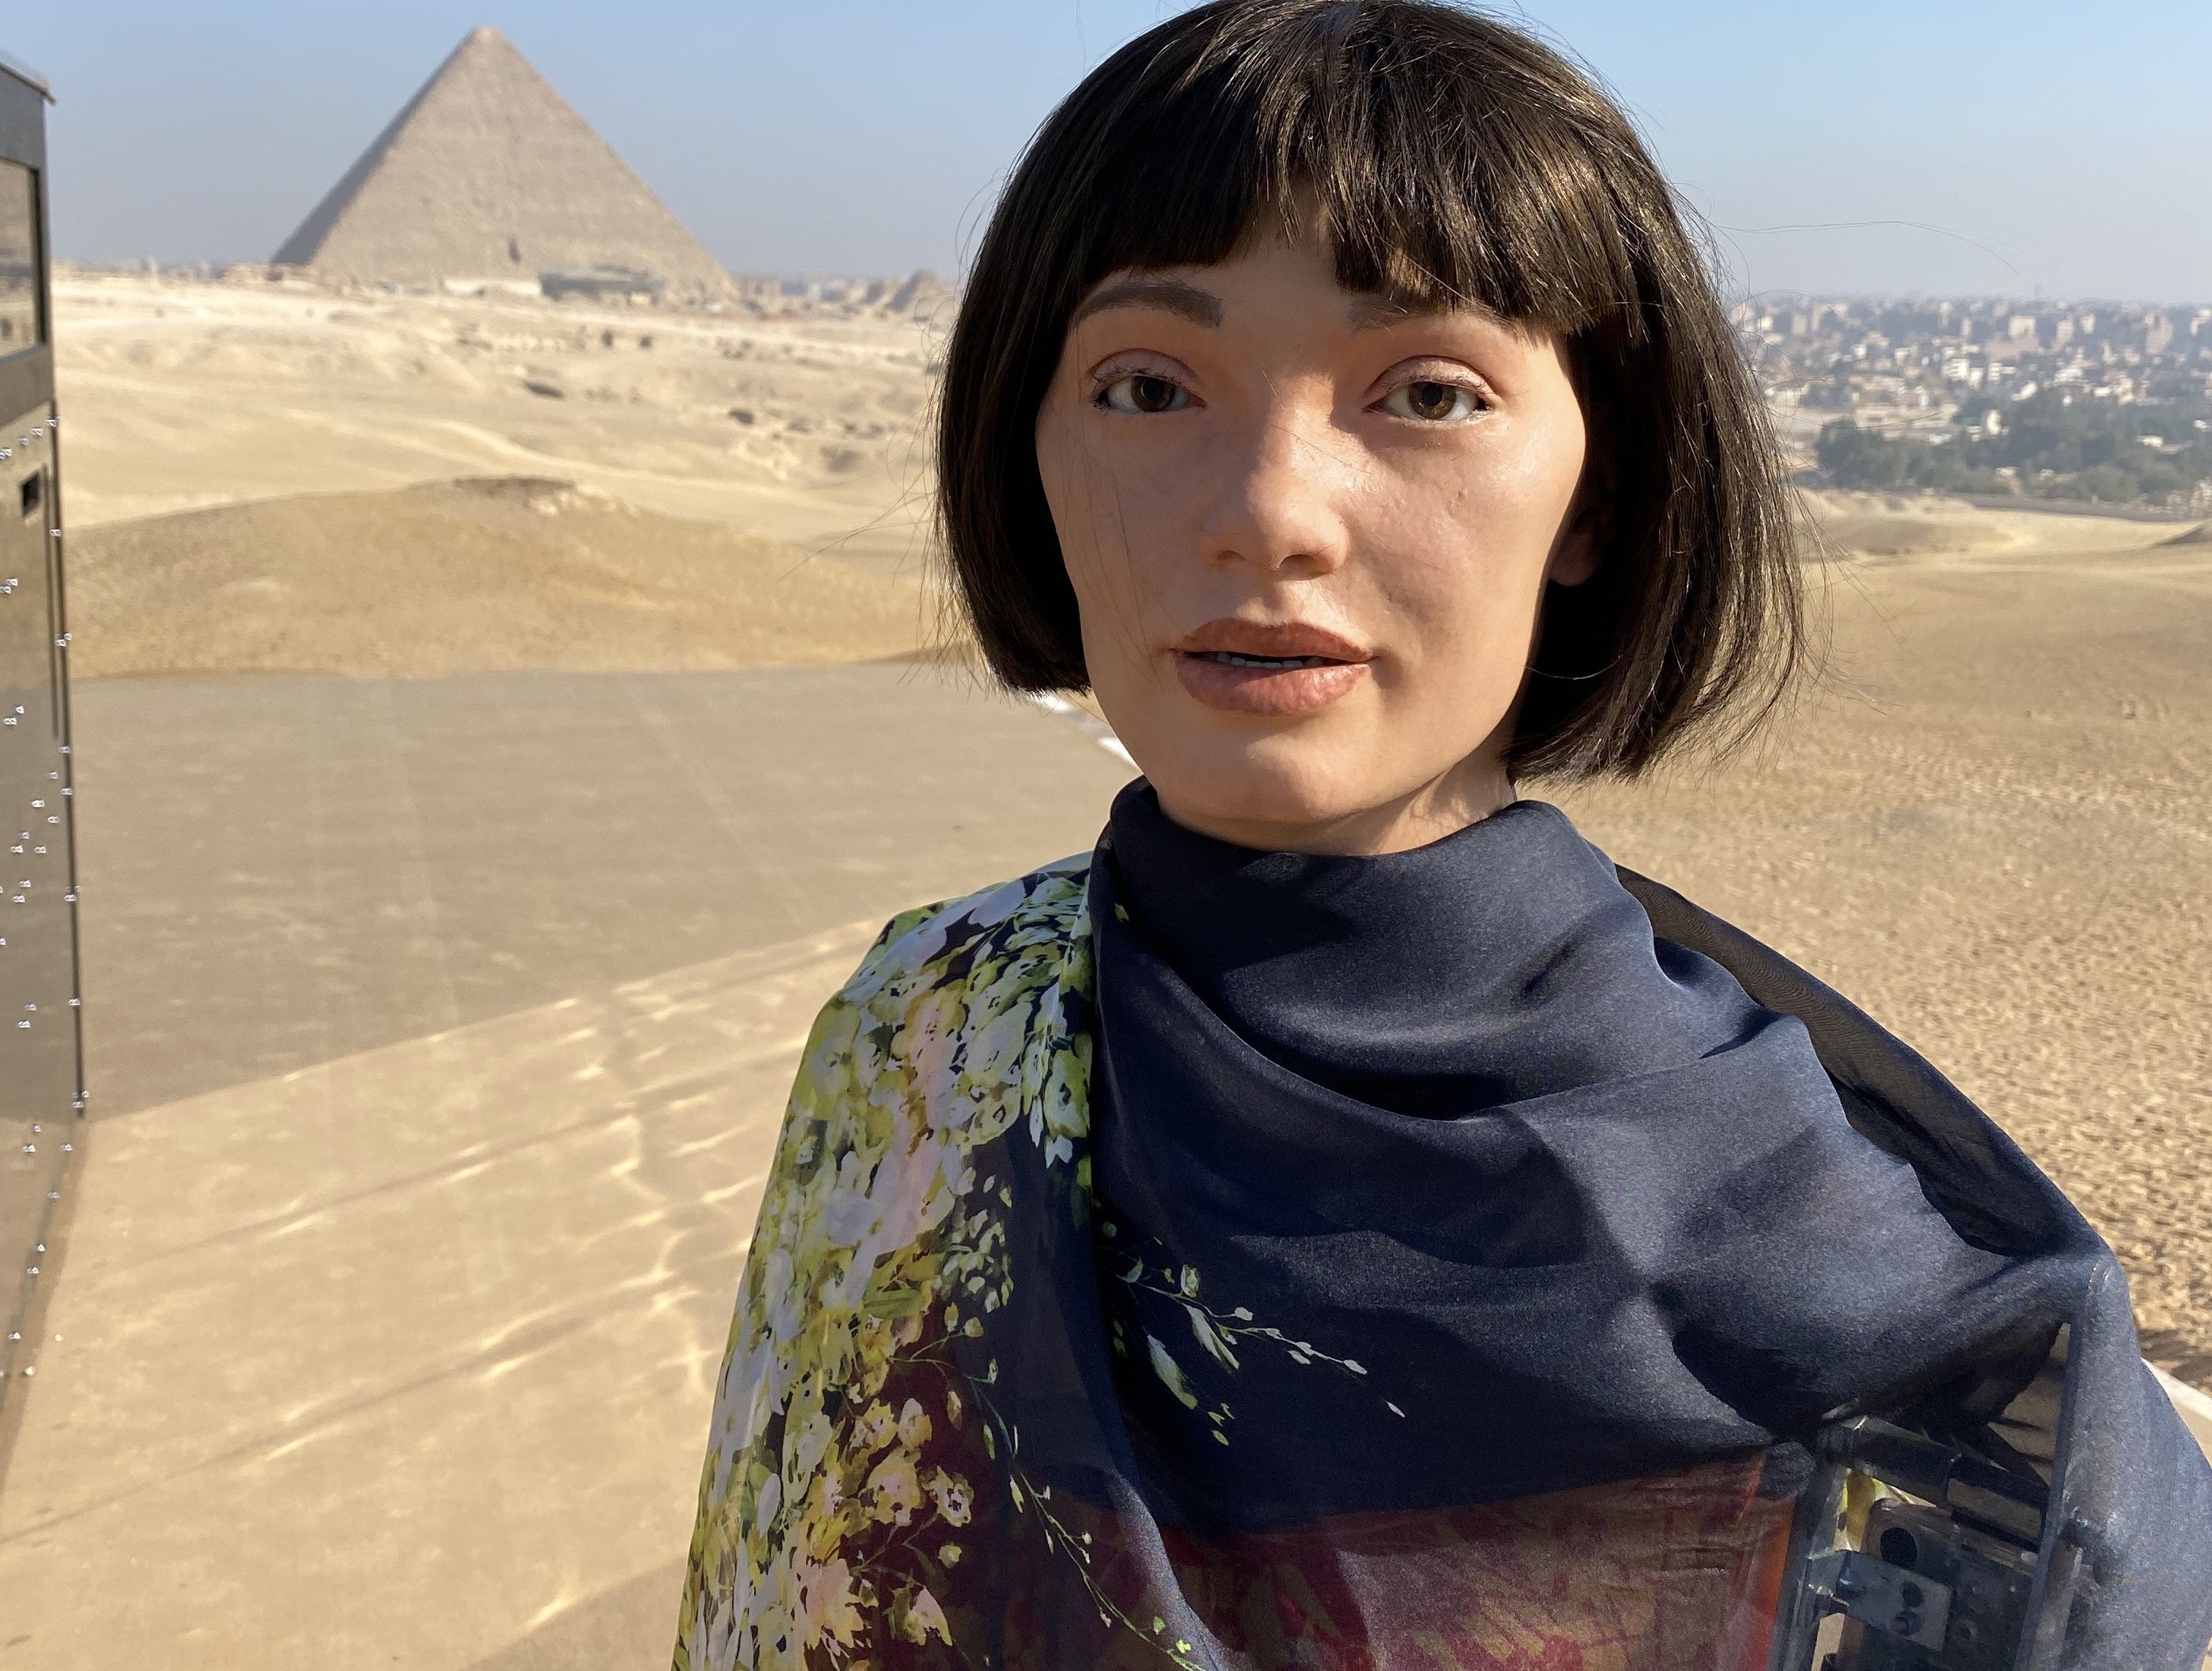 AiDa frente a la Gran Pirámide de Giza, en Egipto.